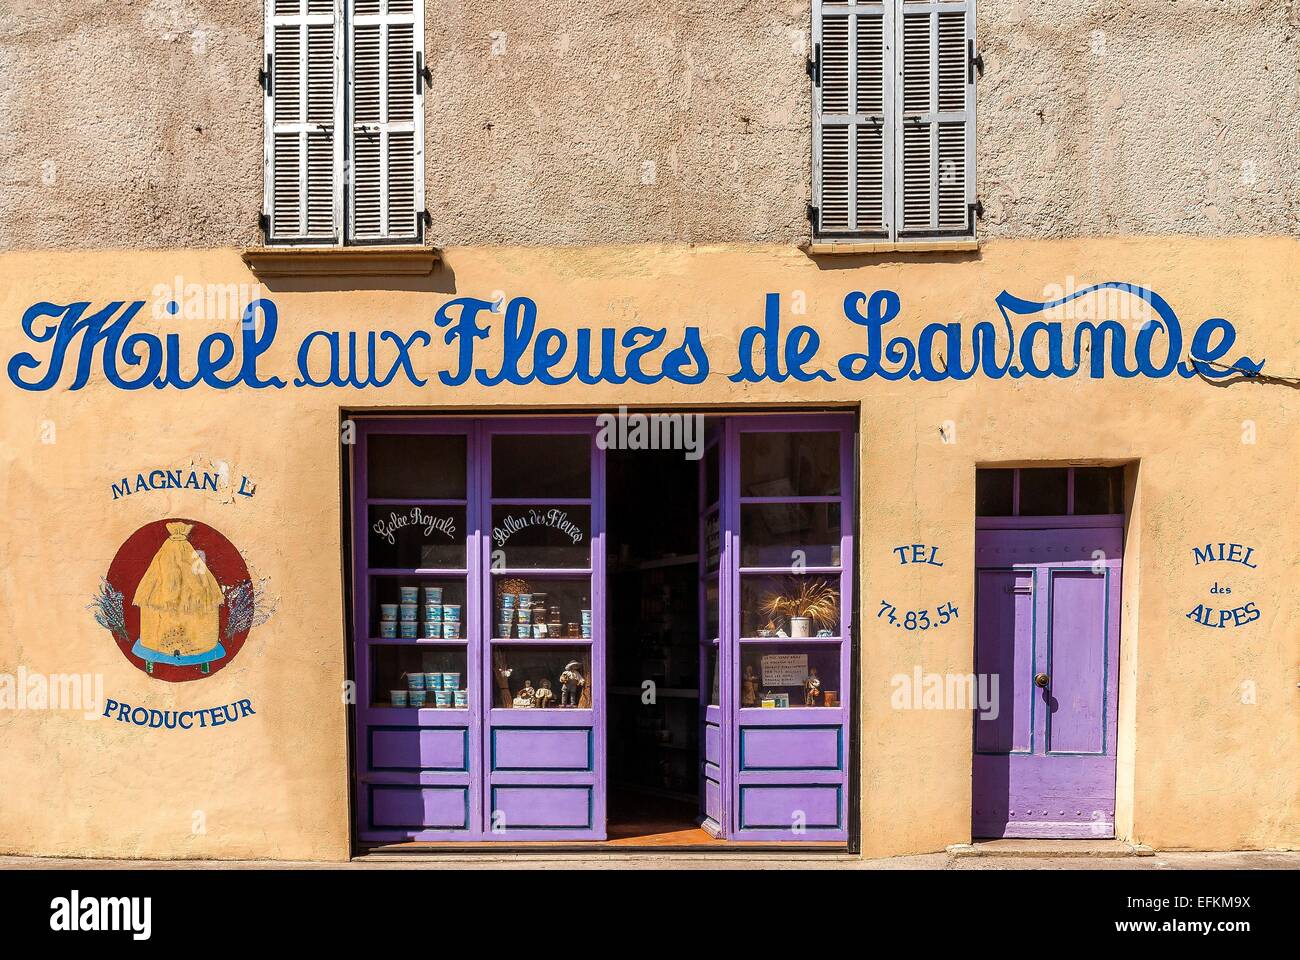 Devanture de commerce et vente de produit provençale Valensole Haute Provence Francia 04 Foto Stock